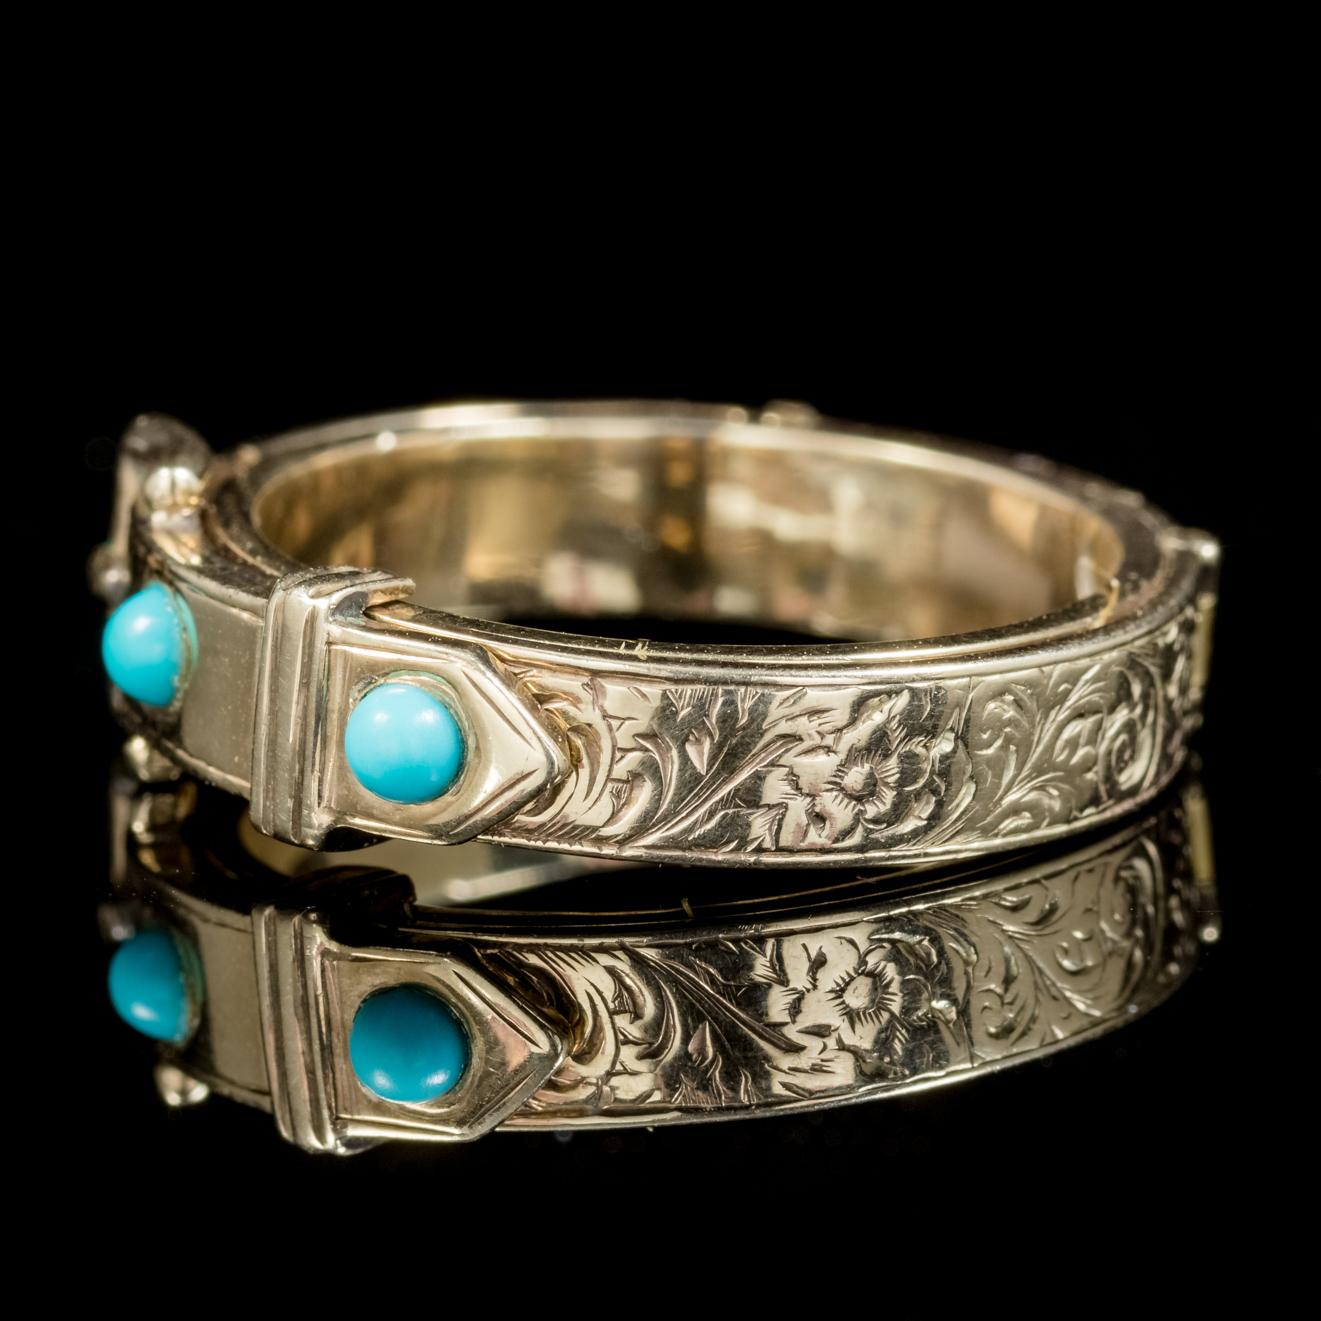 Eine große antike Mourning Schnalle Ring aus der georgianischen Ära, CIRCA 1800. 

Das Stück ist wunderschön gestaltet mit einer gravierten Schnalle auf der Vorderseite, die mit zwei Türkissteinen gekrönt ist. 

Die Schnalle lässt sich ebenfalls